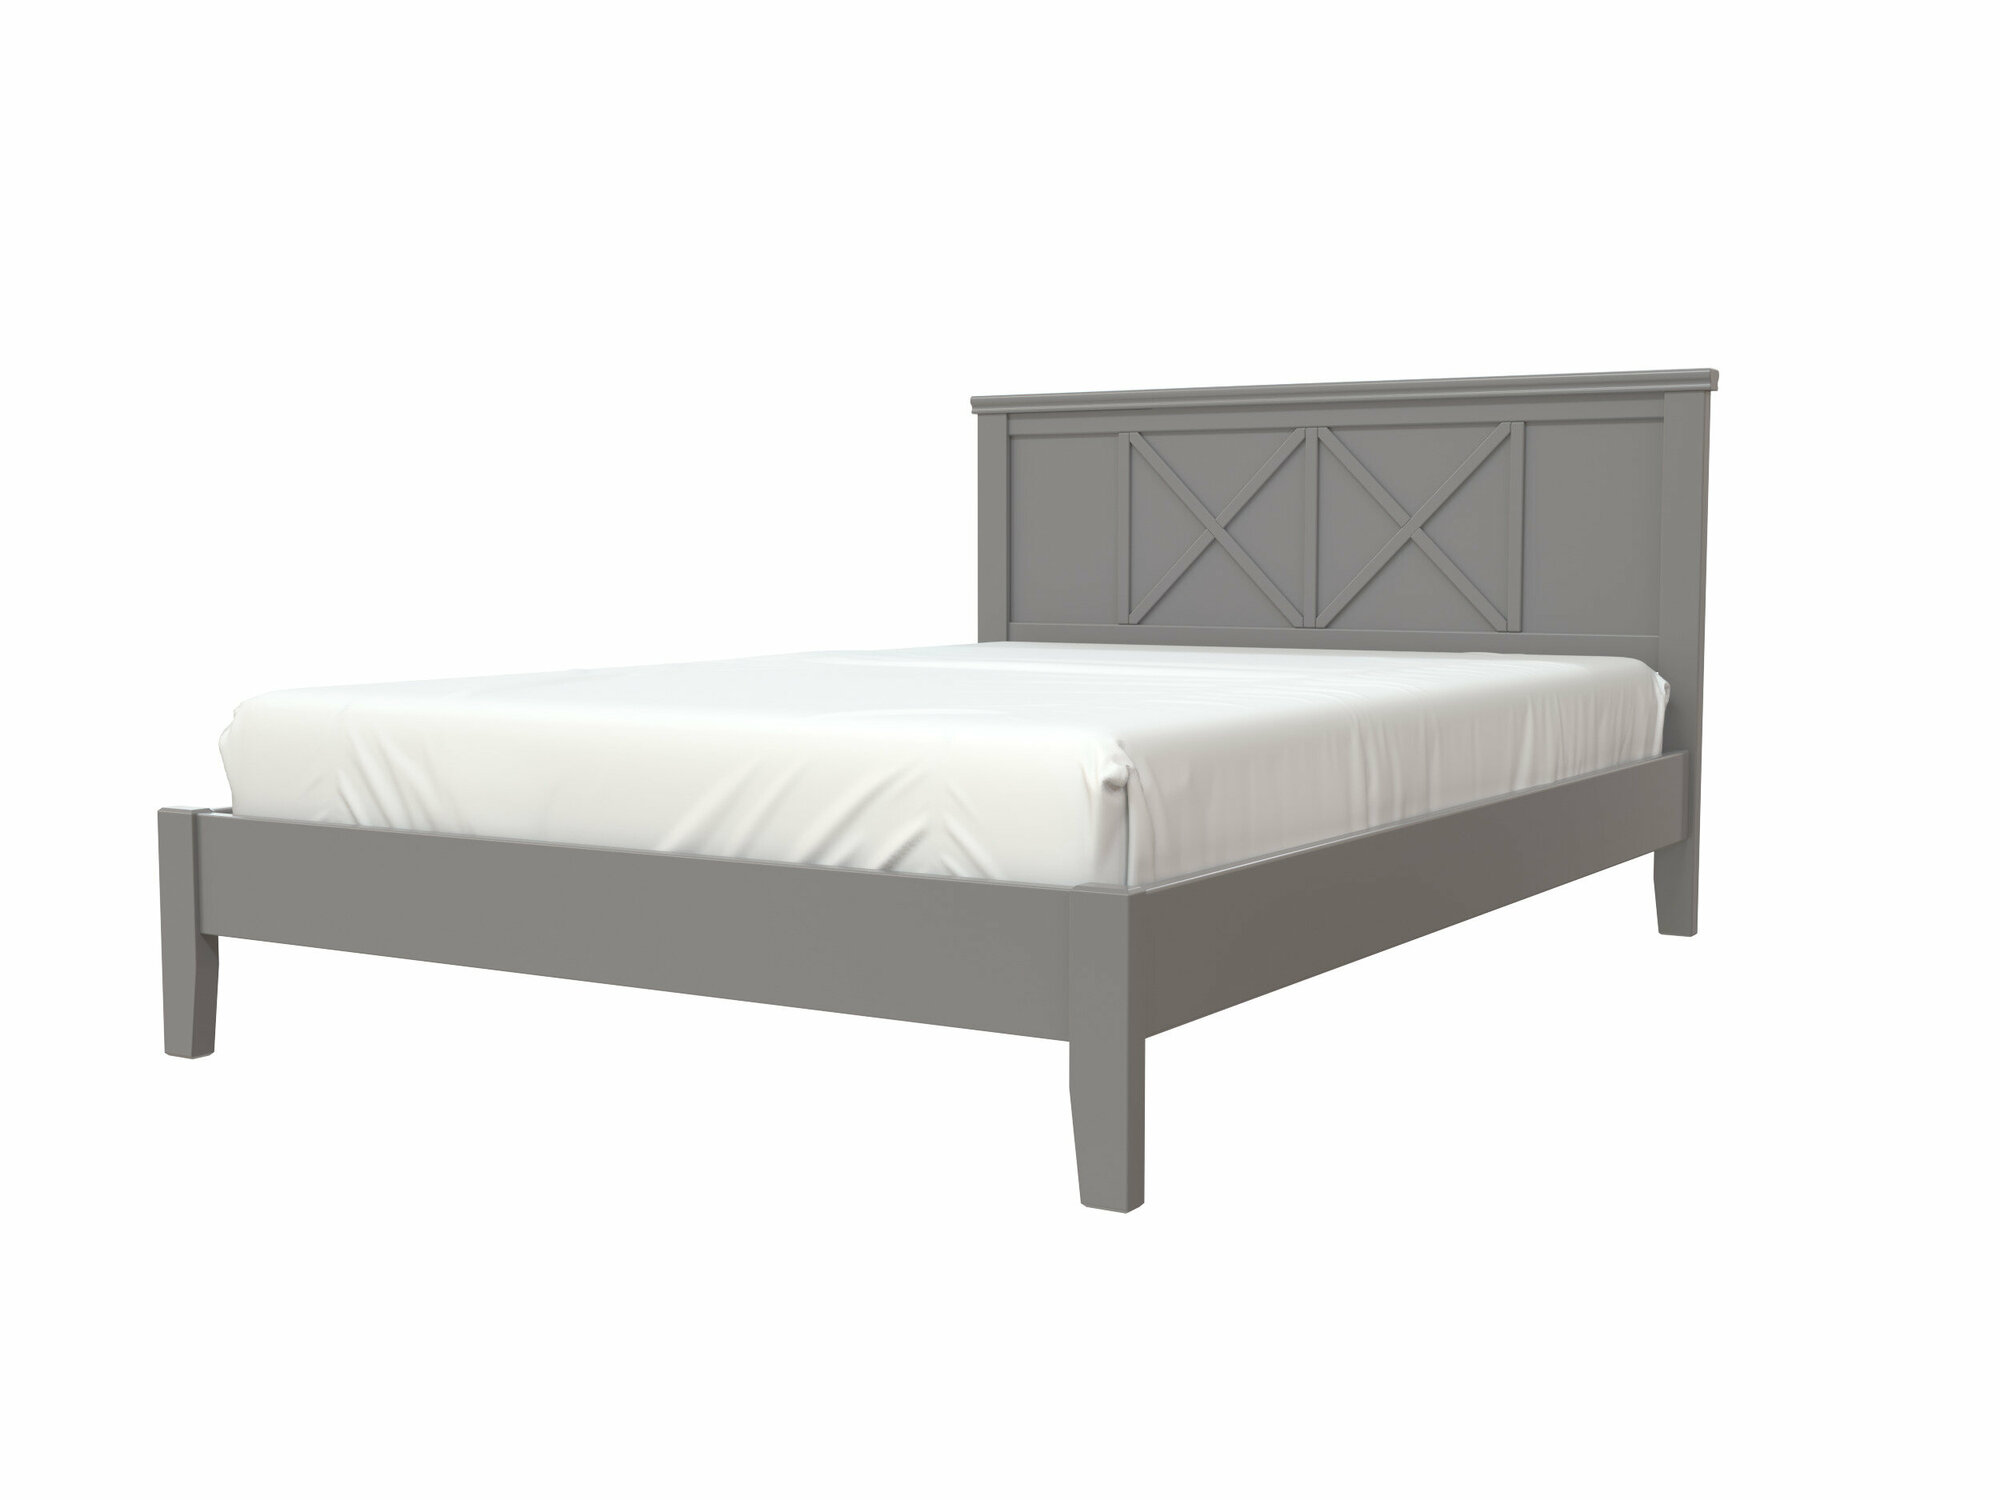 Двуспальная деревянная кровать Грация-2 (160х200), цвет антрацит (Браво мебель).